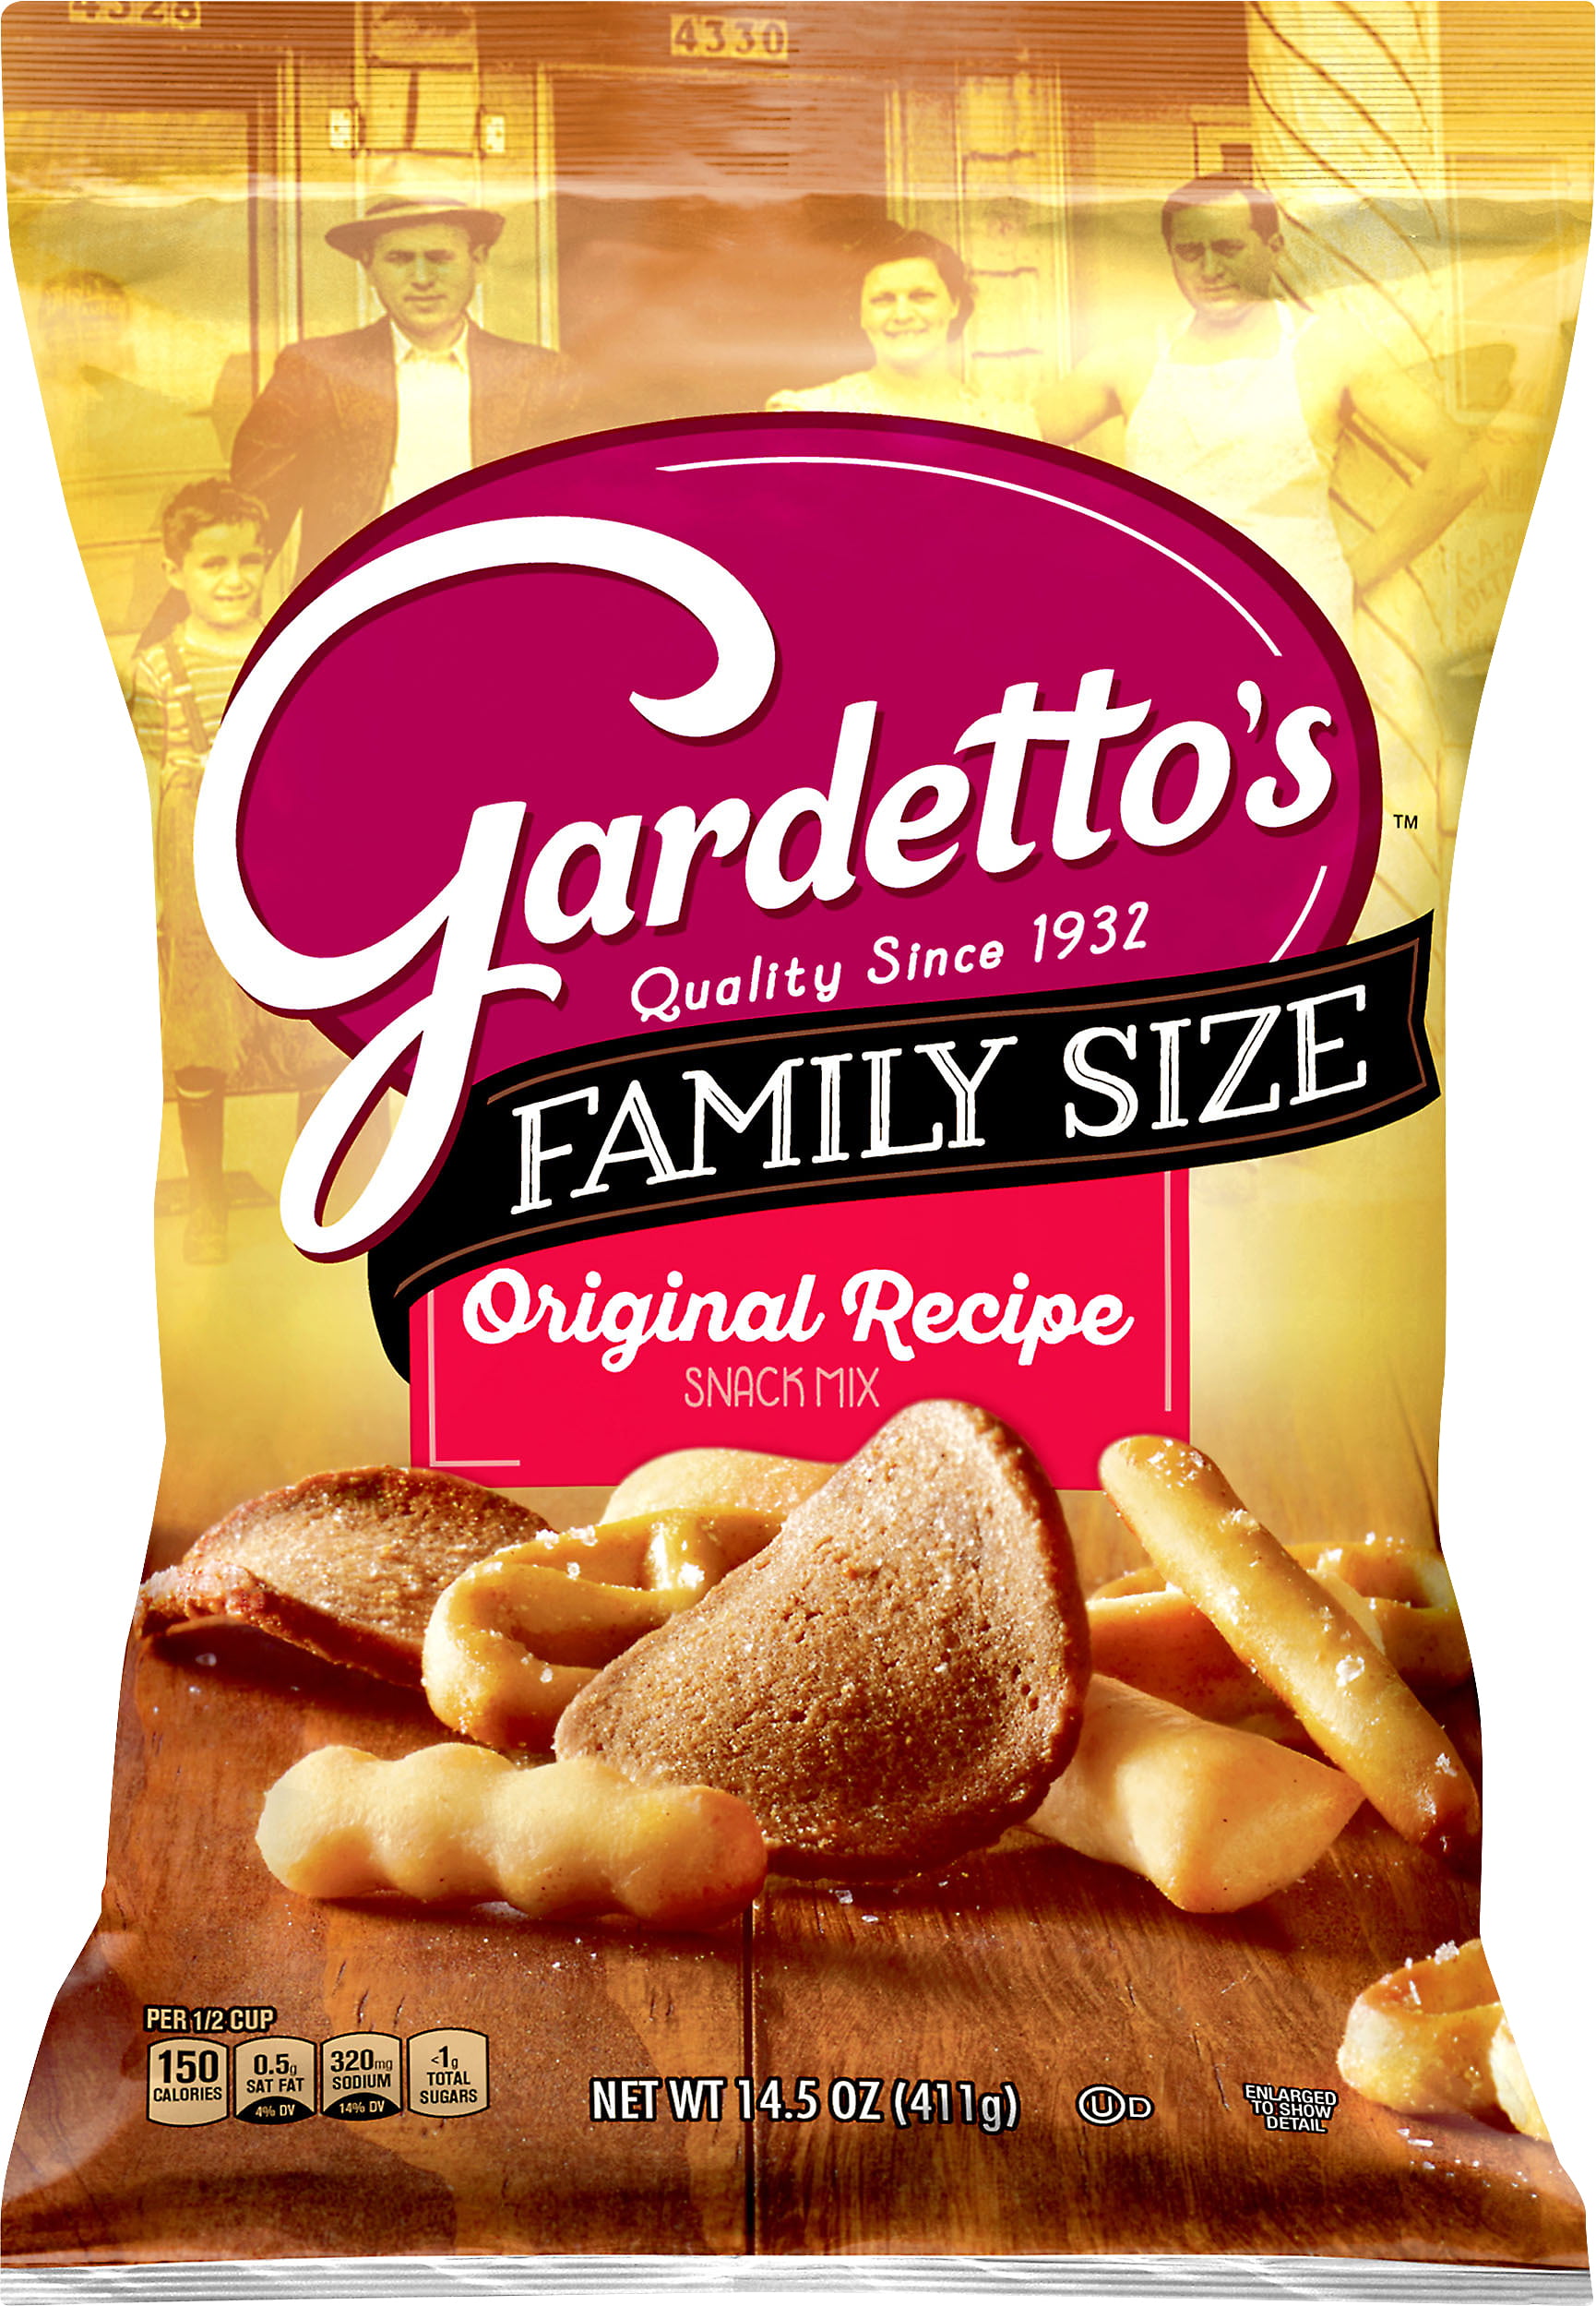 Gardettos Original Recipe Snack Mix, 14.5 oz - Walmart.com - Walmart.com